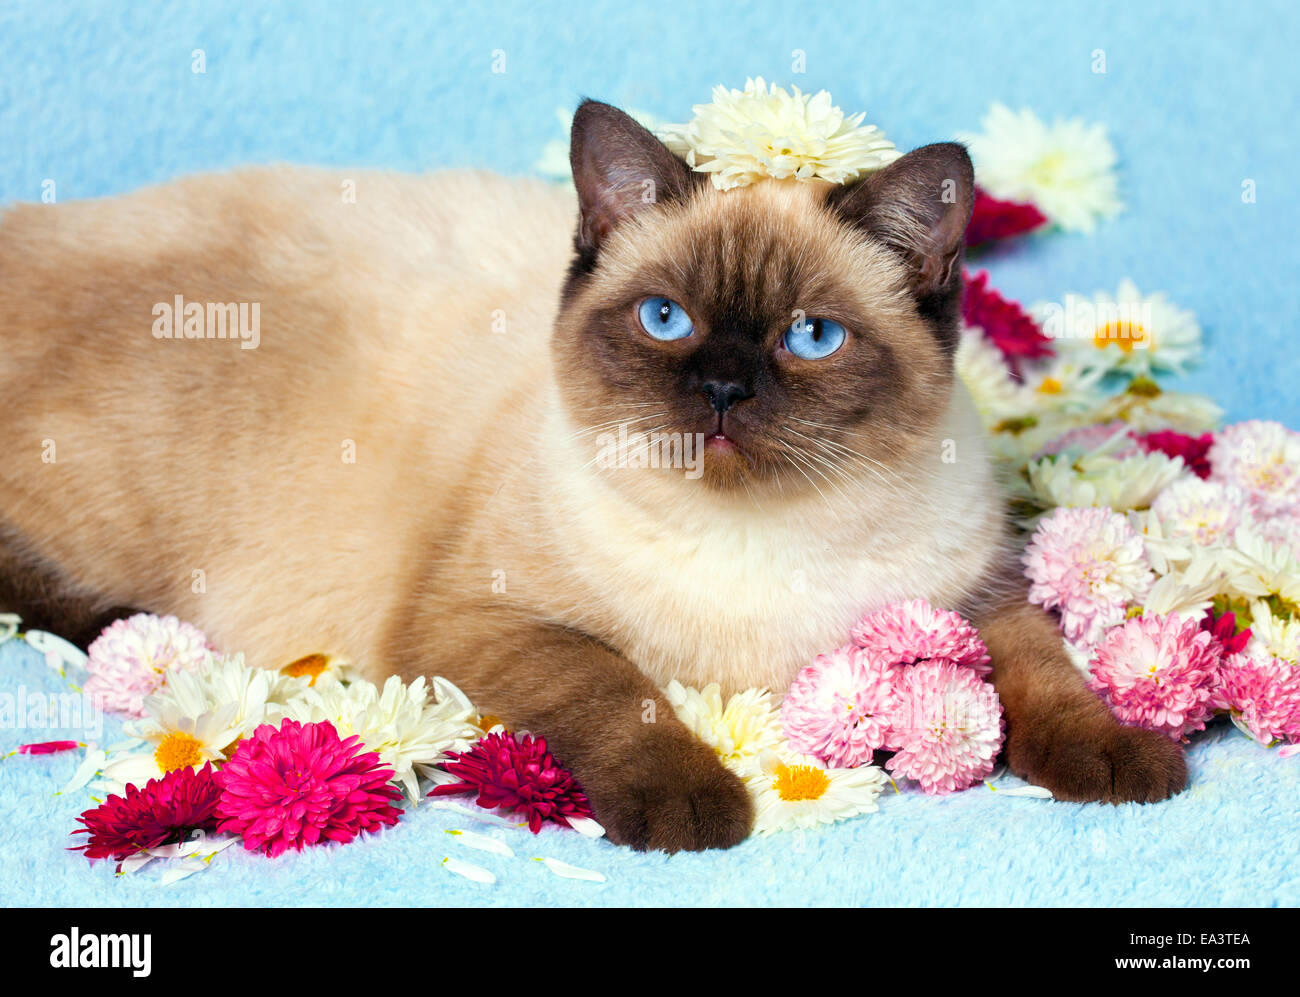 Cute Farbpunkt Britisch Kurzhaar Katze entspannt auf blaue Decke bedeckt mit Blumen Stockfoto